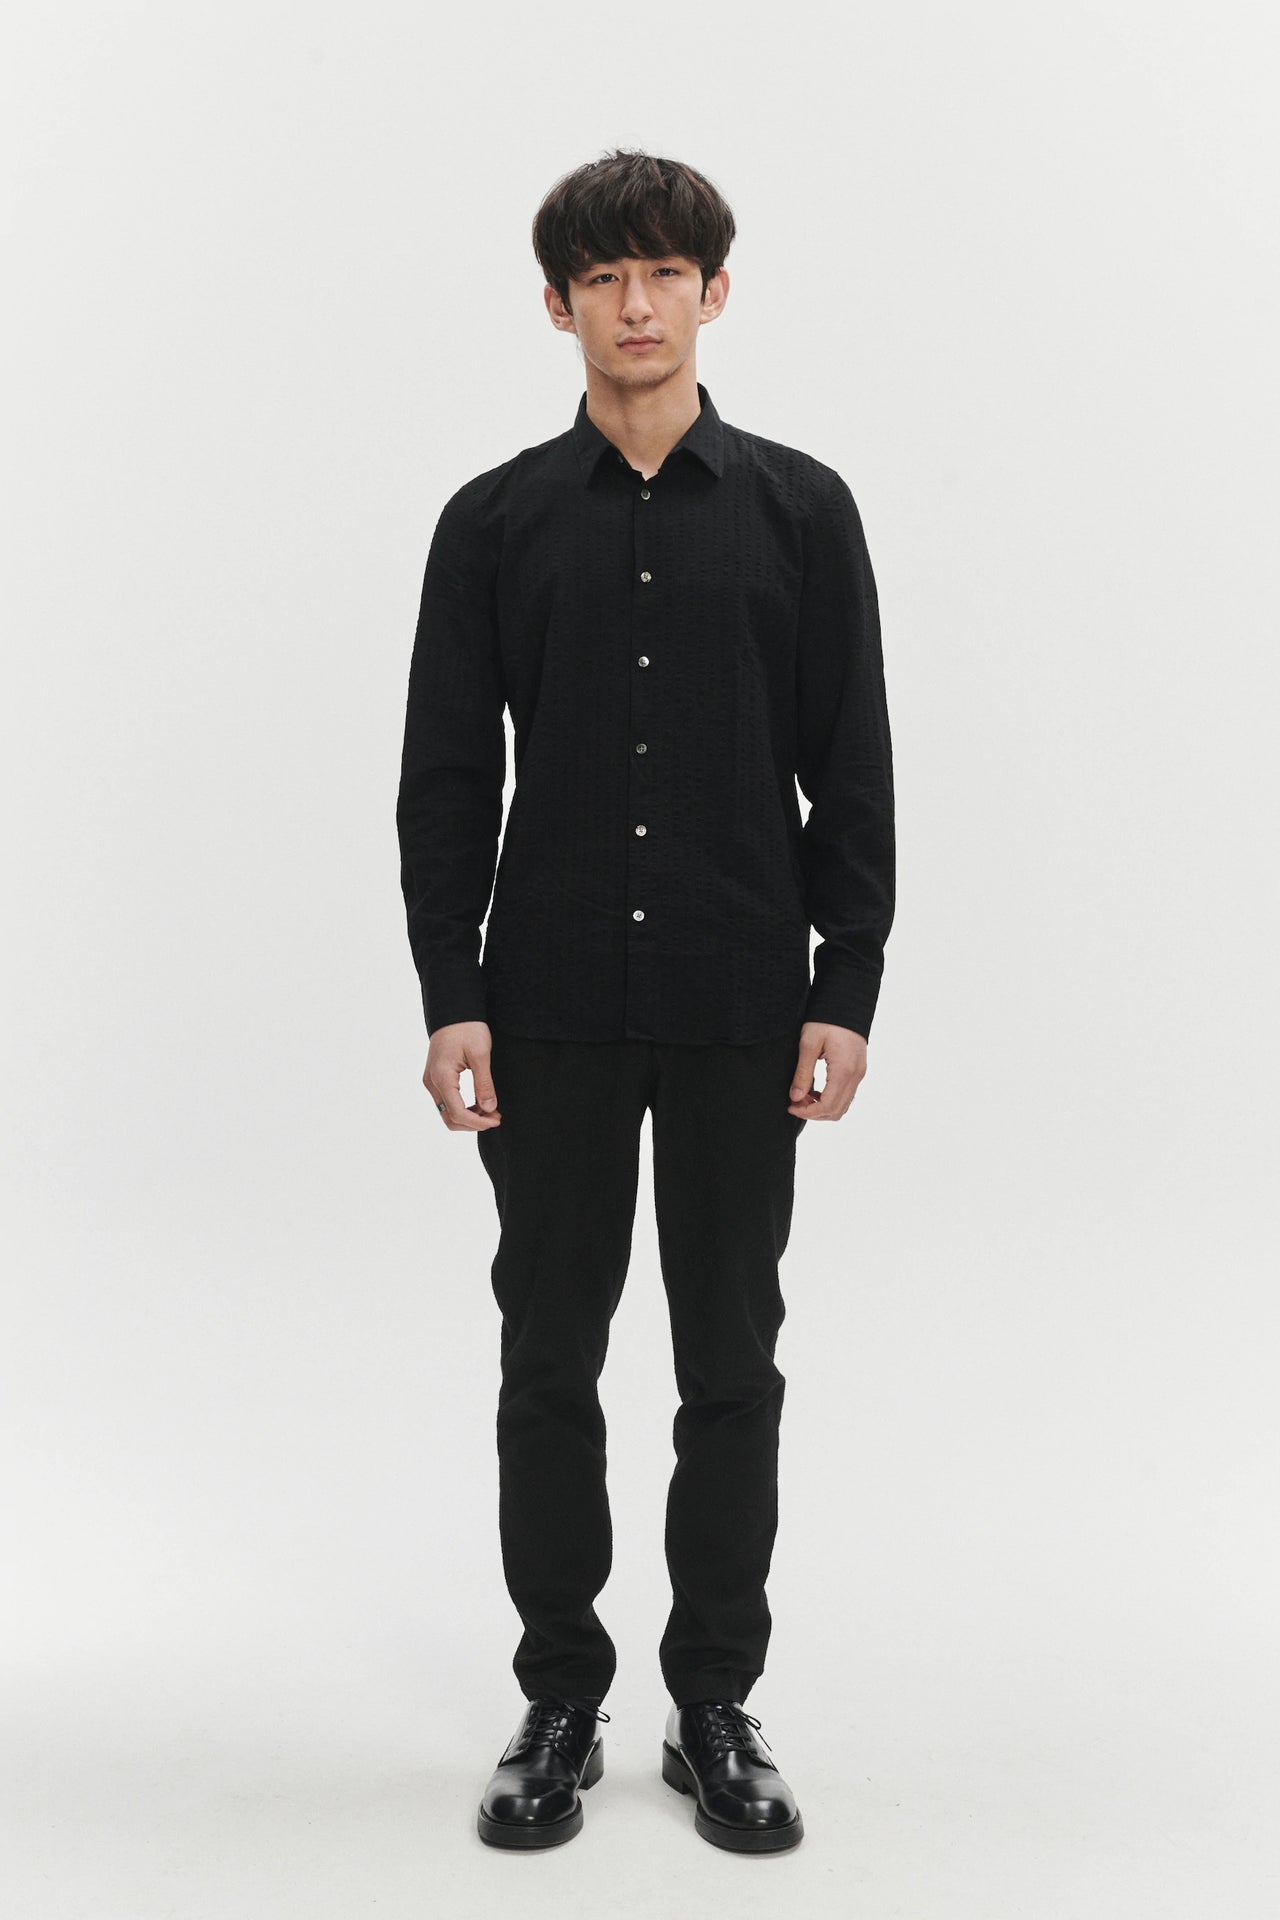 Feel Good Shirt in a Black Fine Portuguese Lyocell Seersucker